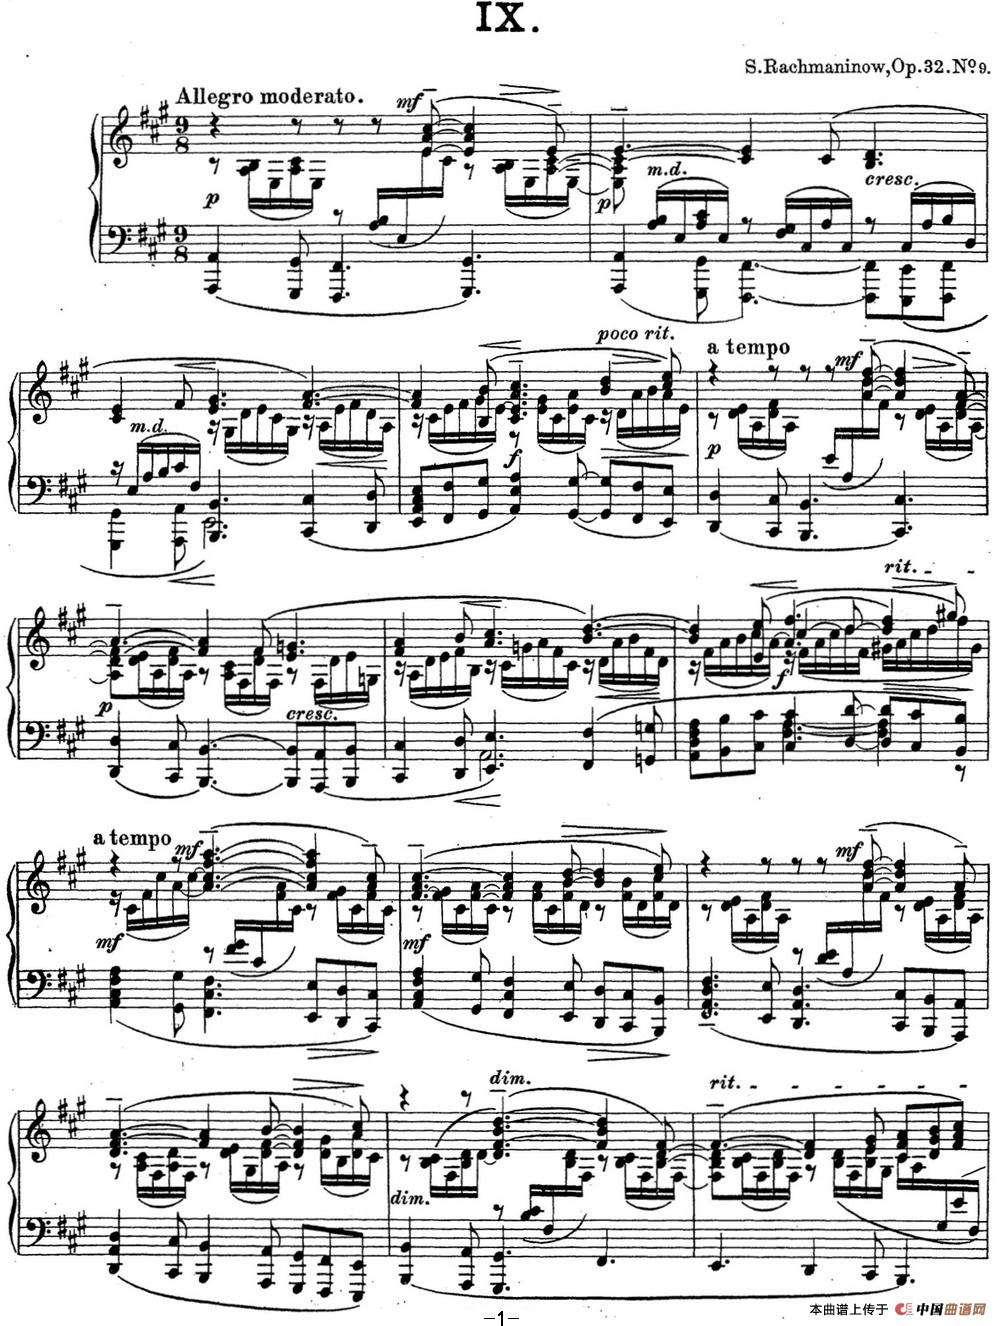 《拉赫玛尼诺夫 钢琴前奏曲20 A大调 Op.32 No.9》钢琴曲谱图分享